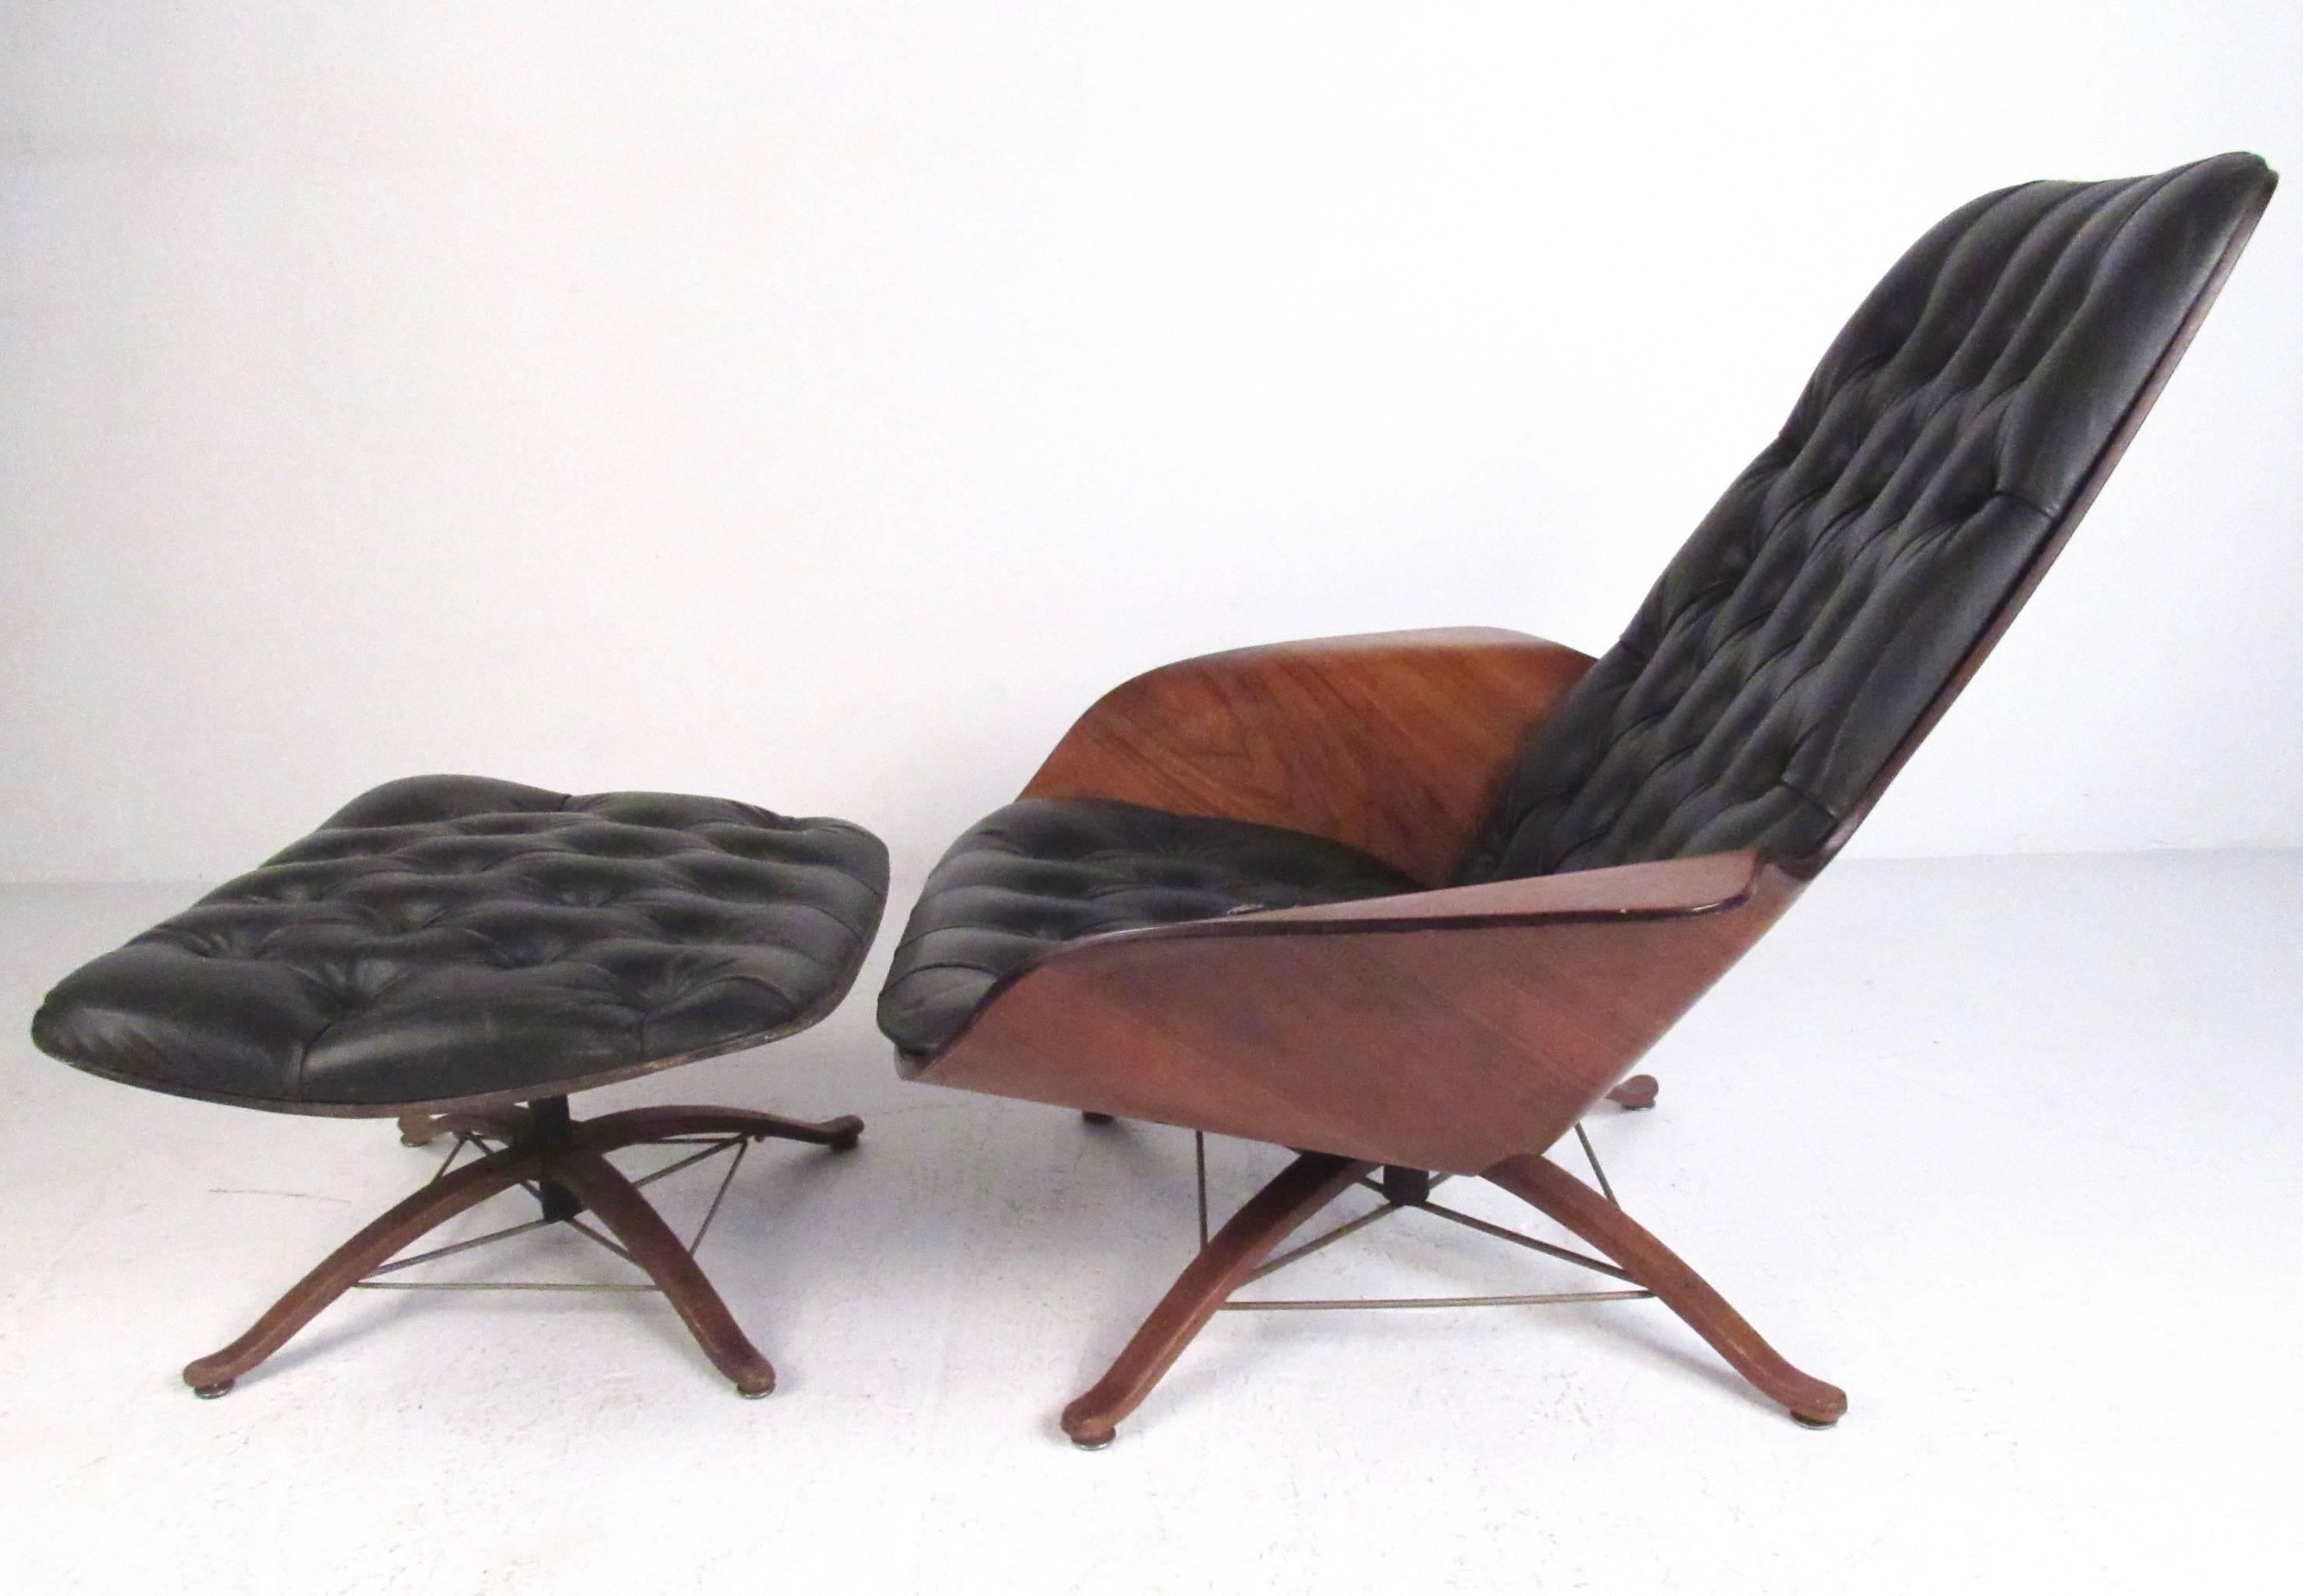 Cette chaise longue en contreplaqué moulé de George Mulhauser est dotée d'élégants accoudoirs en forme d'ailes, de vinyle touffeté et d'une base unique en bois dur avec des brancards en forme d'eiffel en laiton. La combinaison du design du milieu du